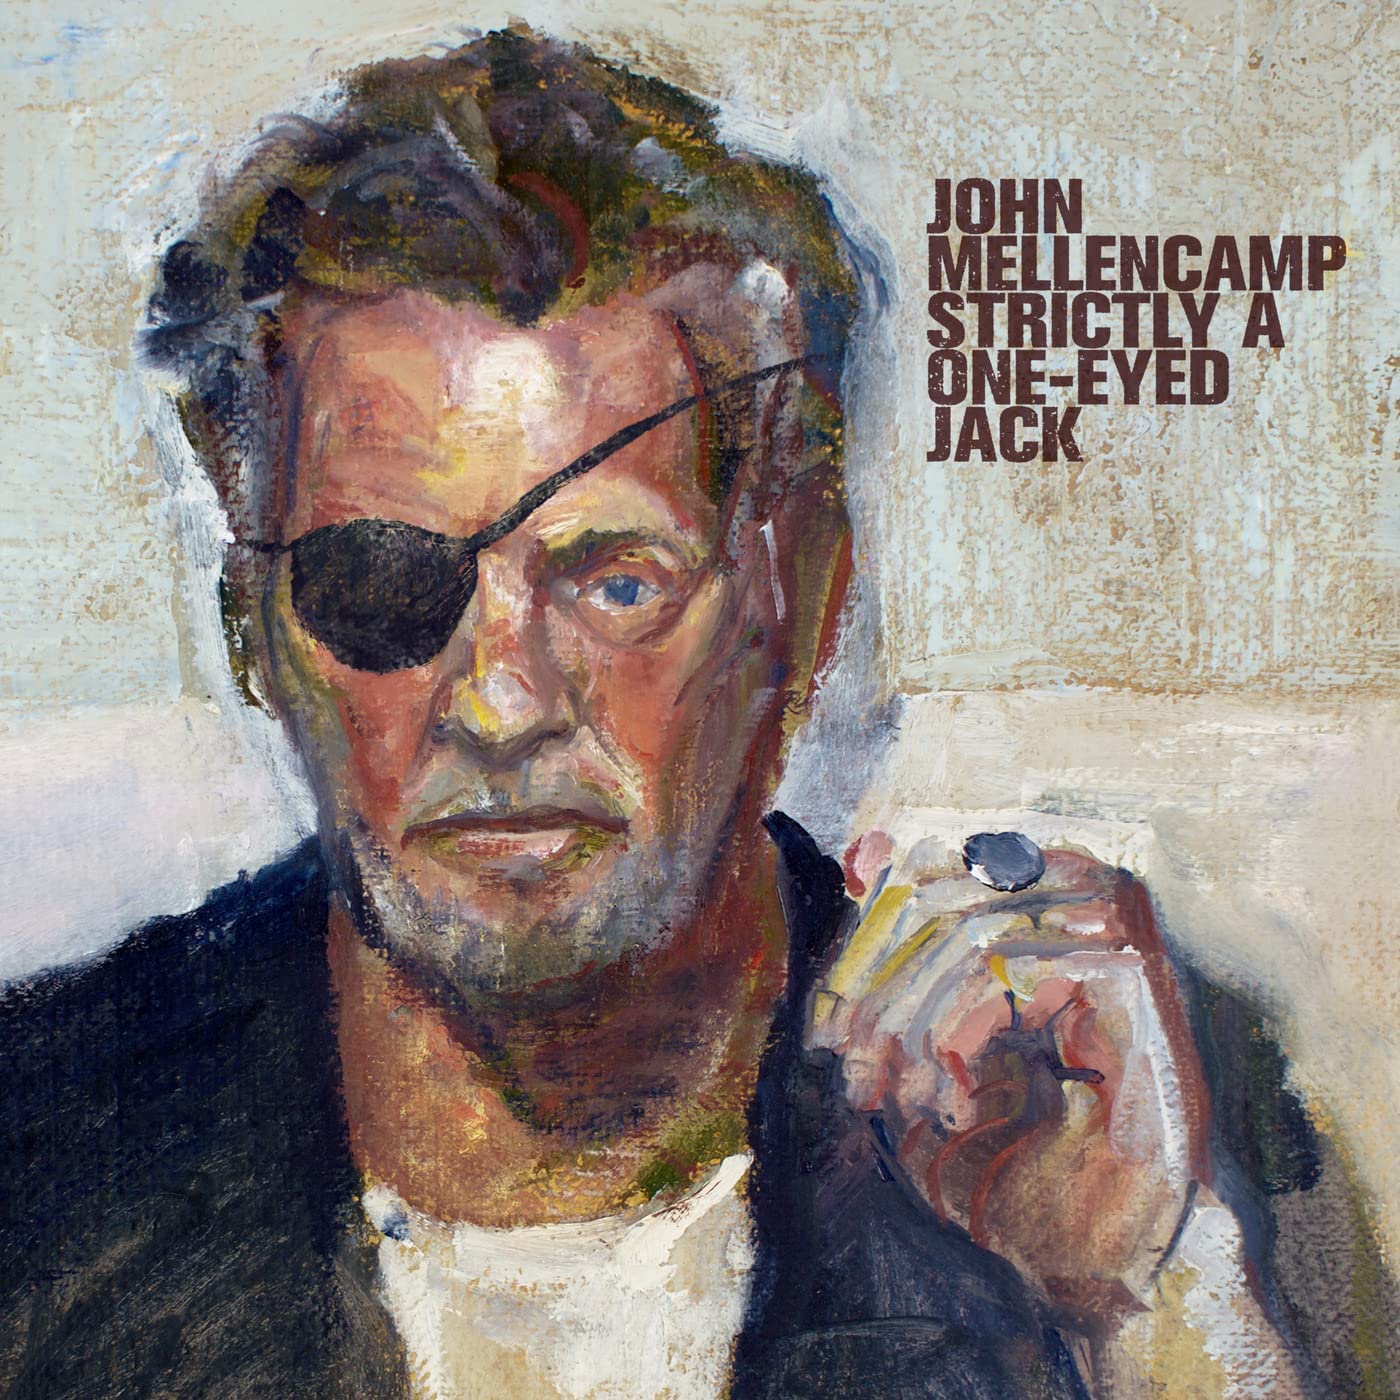 John Mellencamp Simply A One'Eyed Jack - Ireland Vinyl